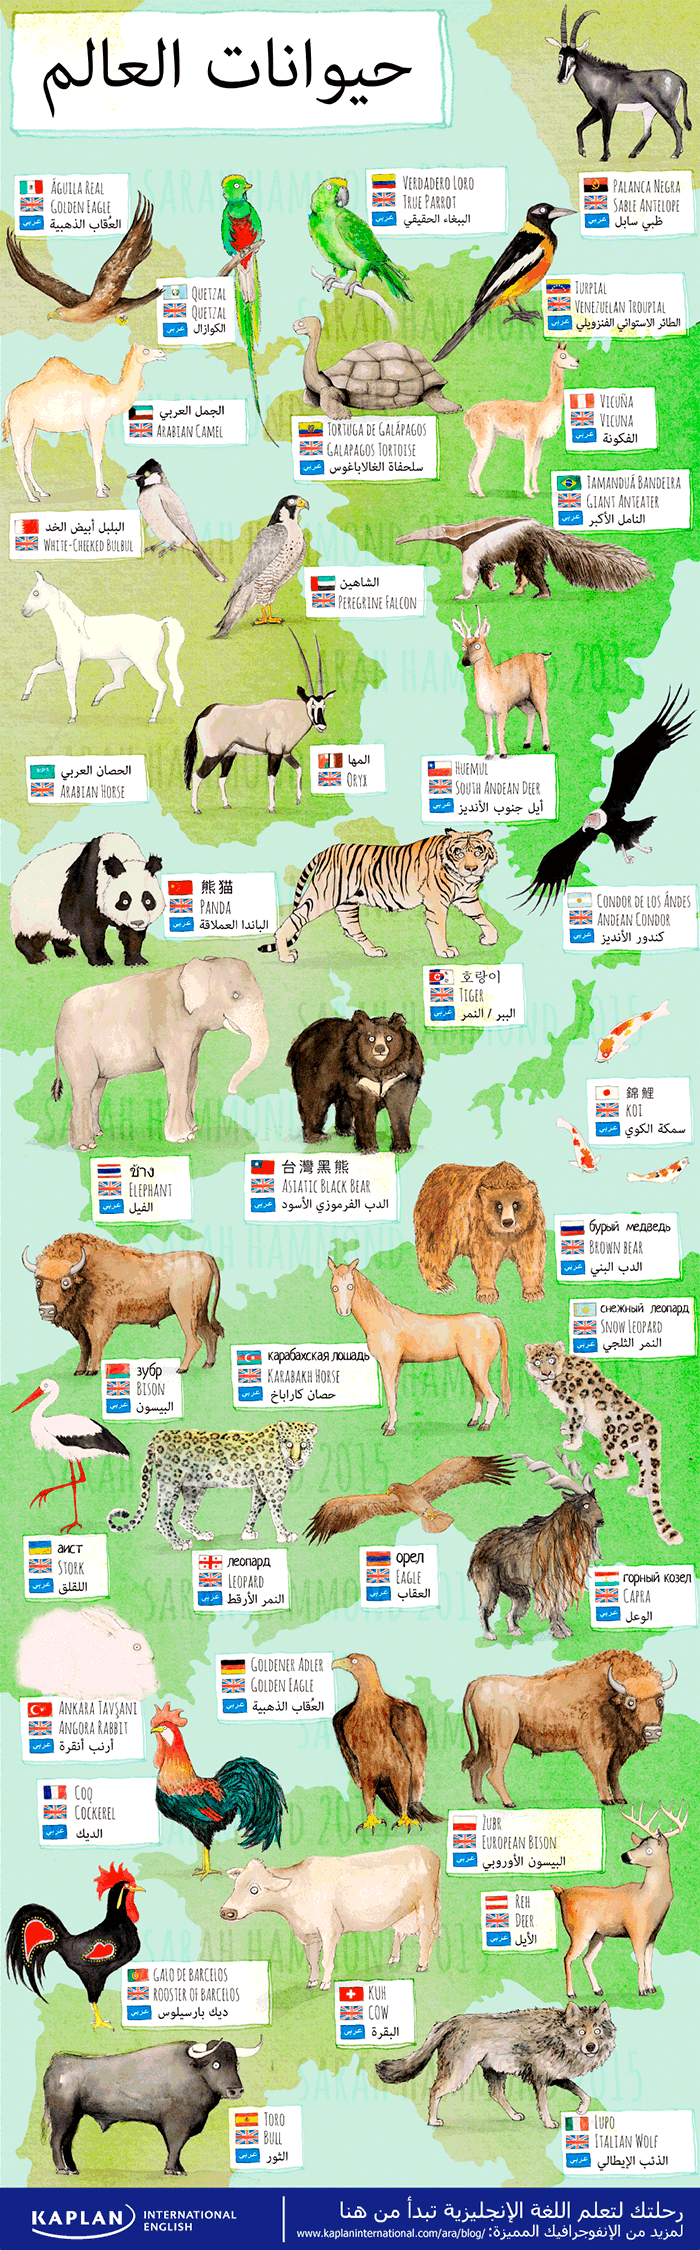 أسماء الحيوانات بالإنجليزي مع البلدان - انفوجرافيك